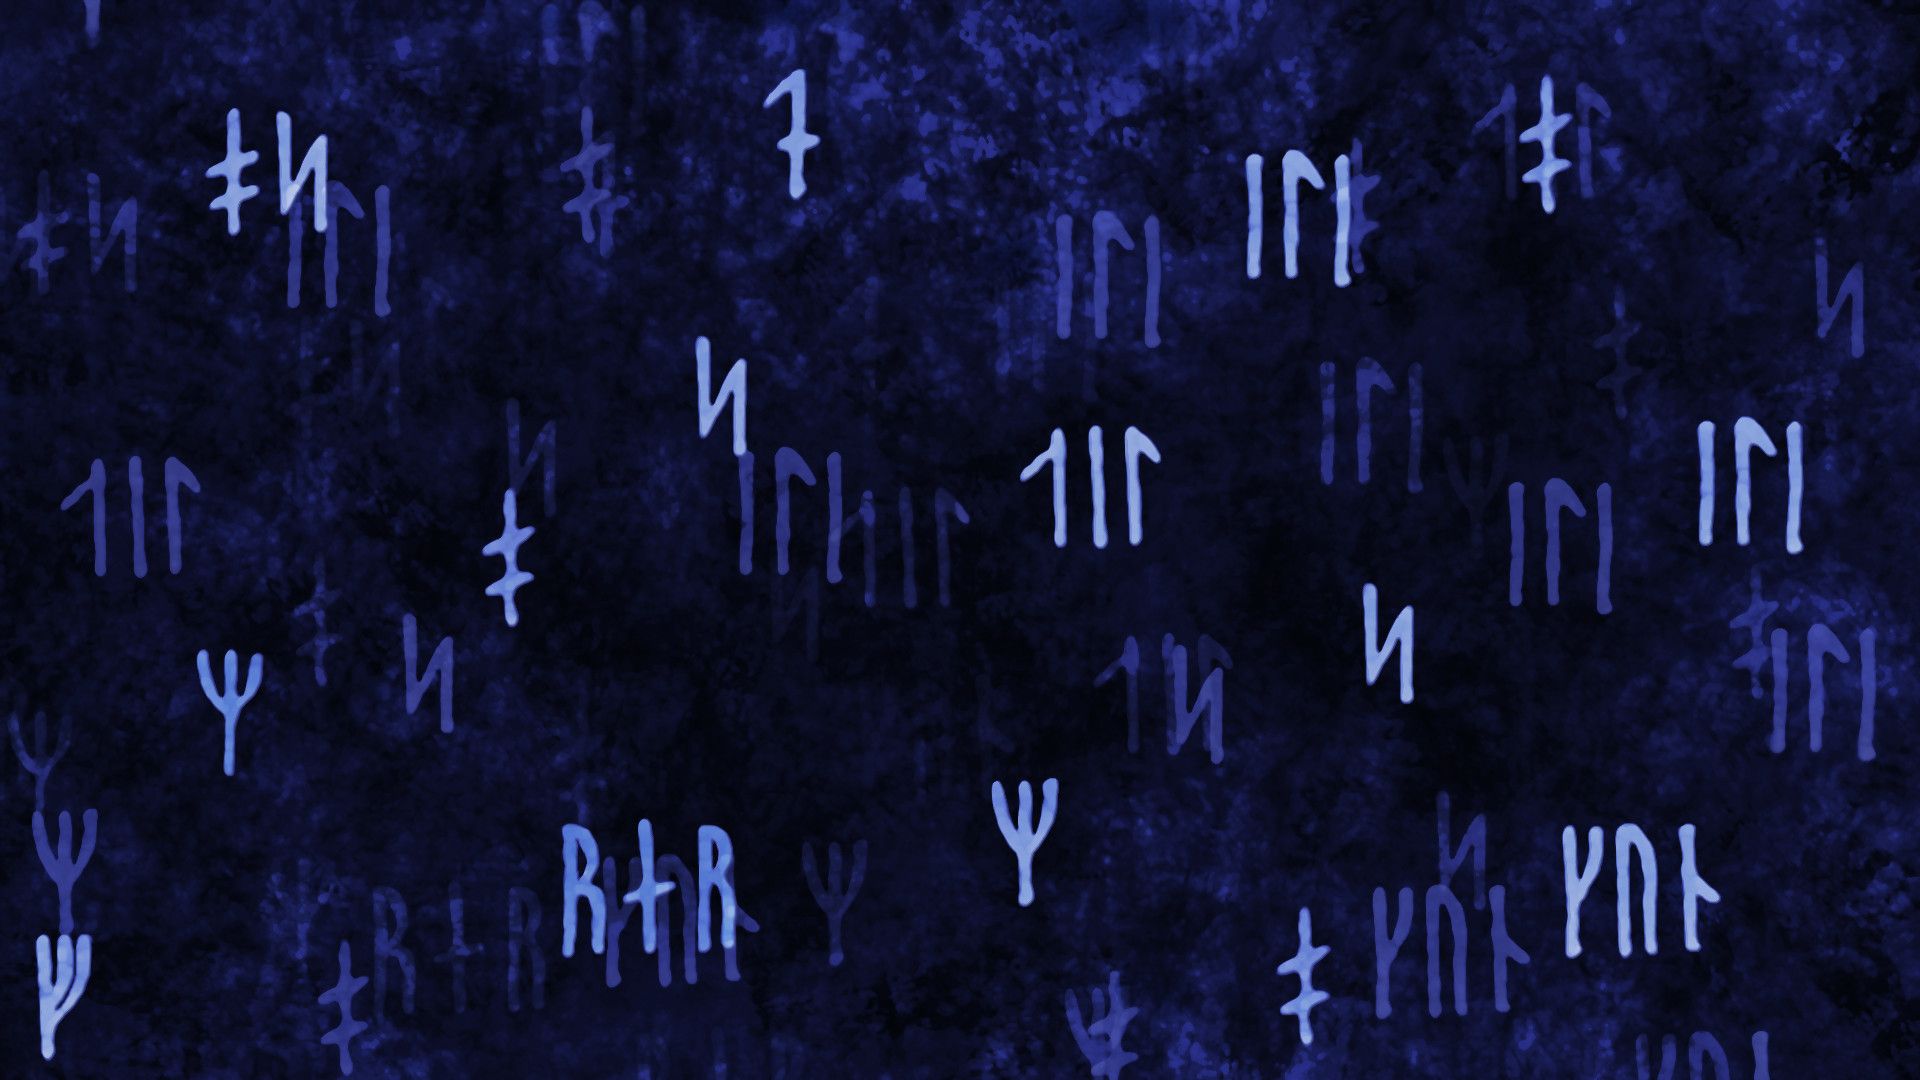 Rune Wallpapers